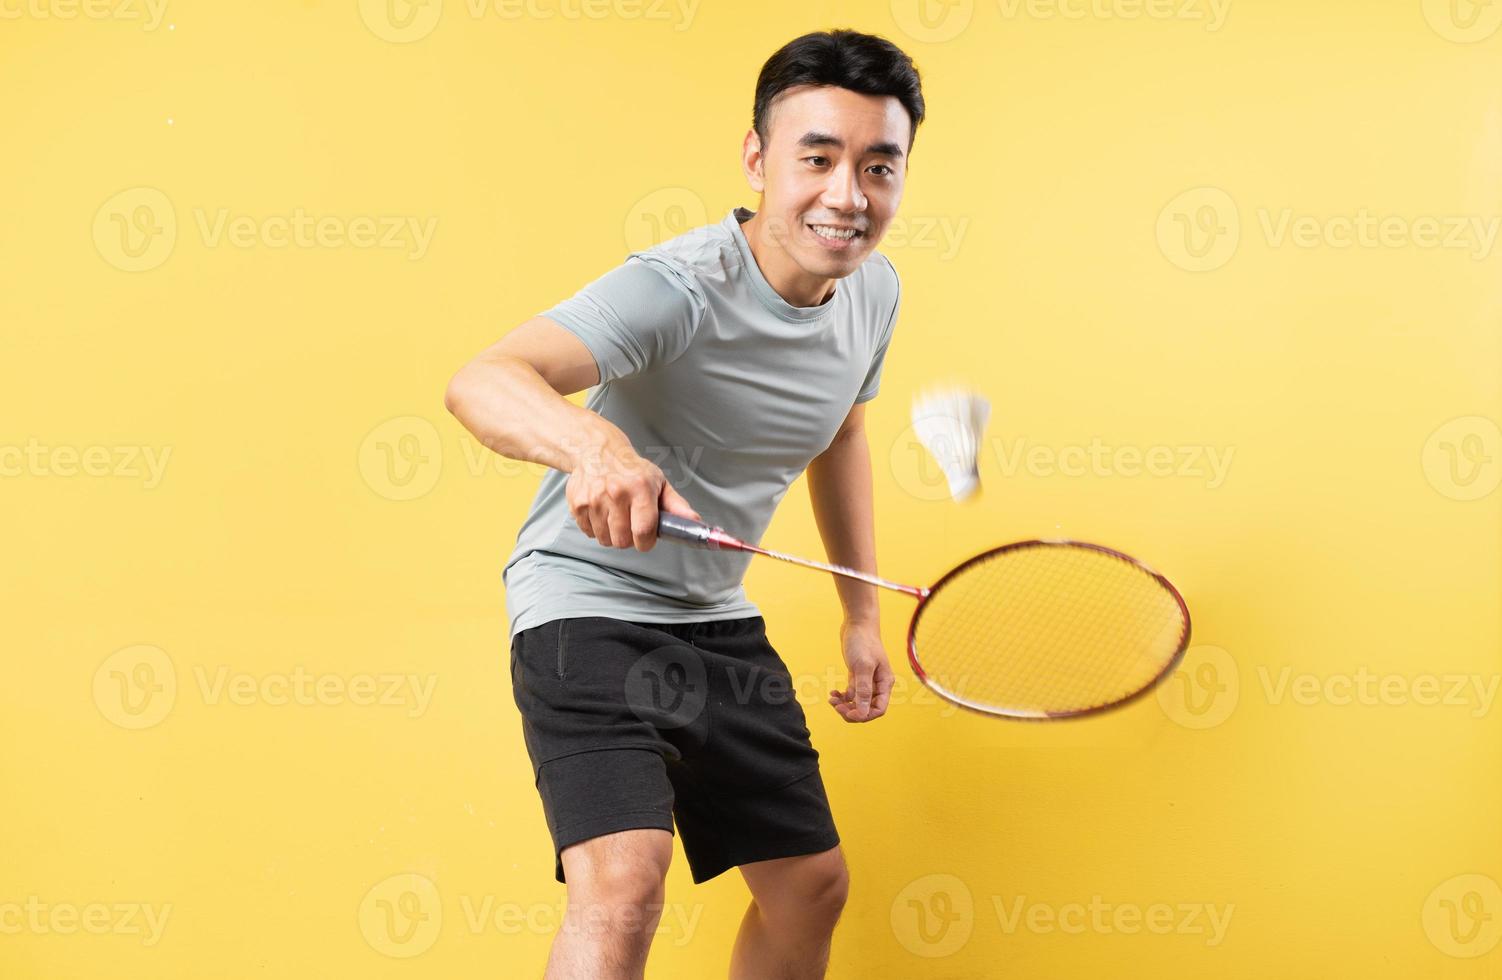 asiatischer Mann, der Badminton auf gelbem Hintergrund spielt foto